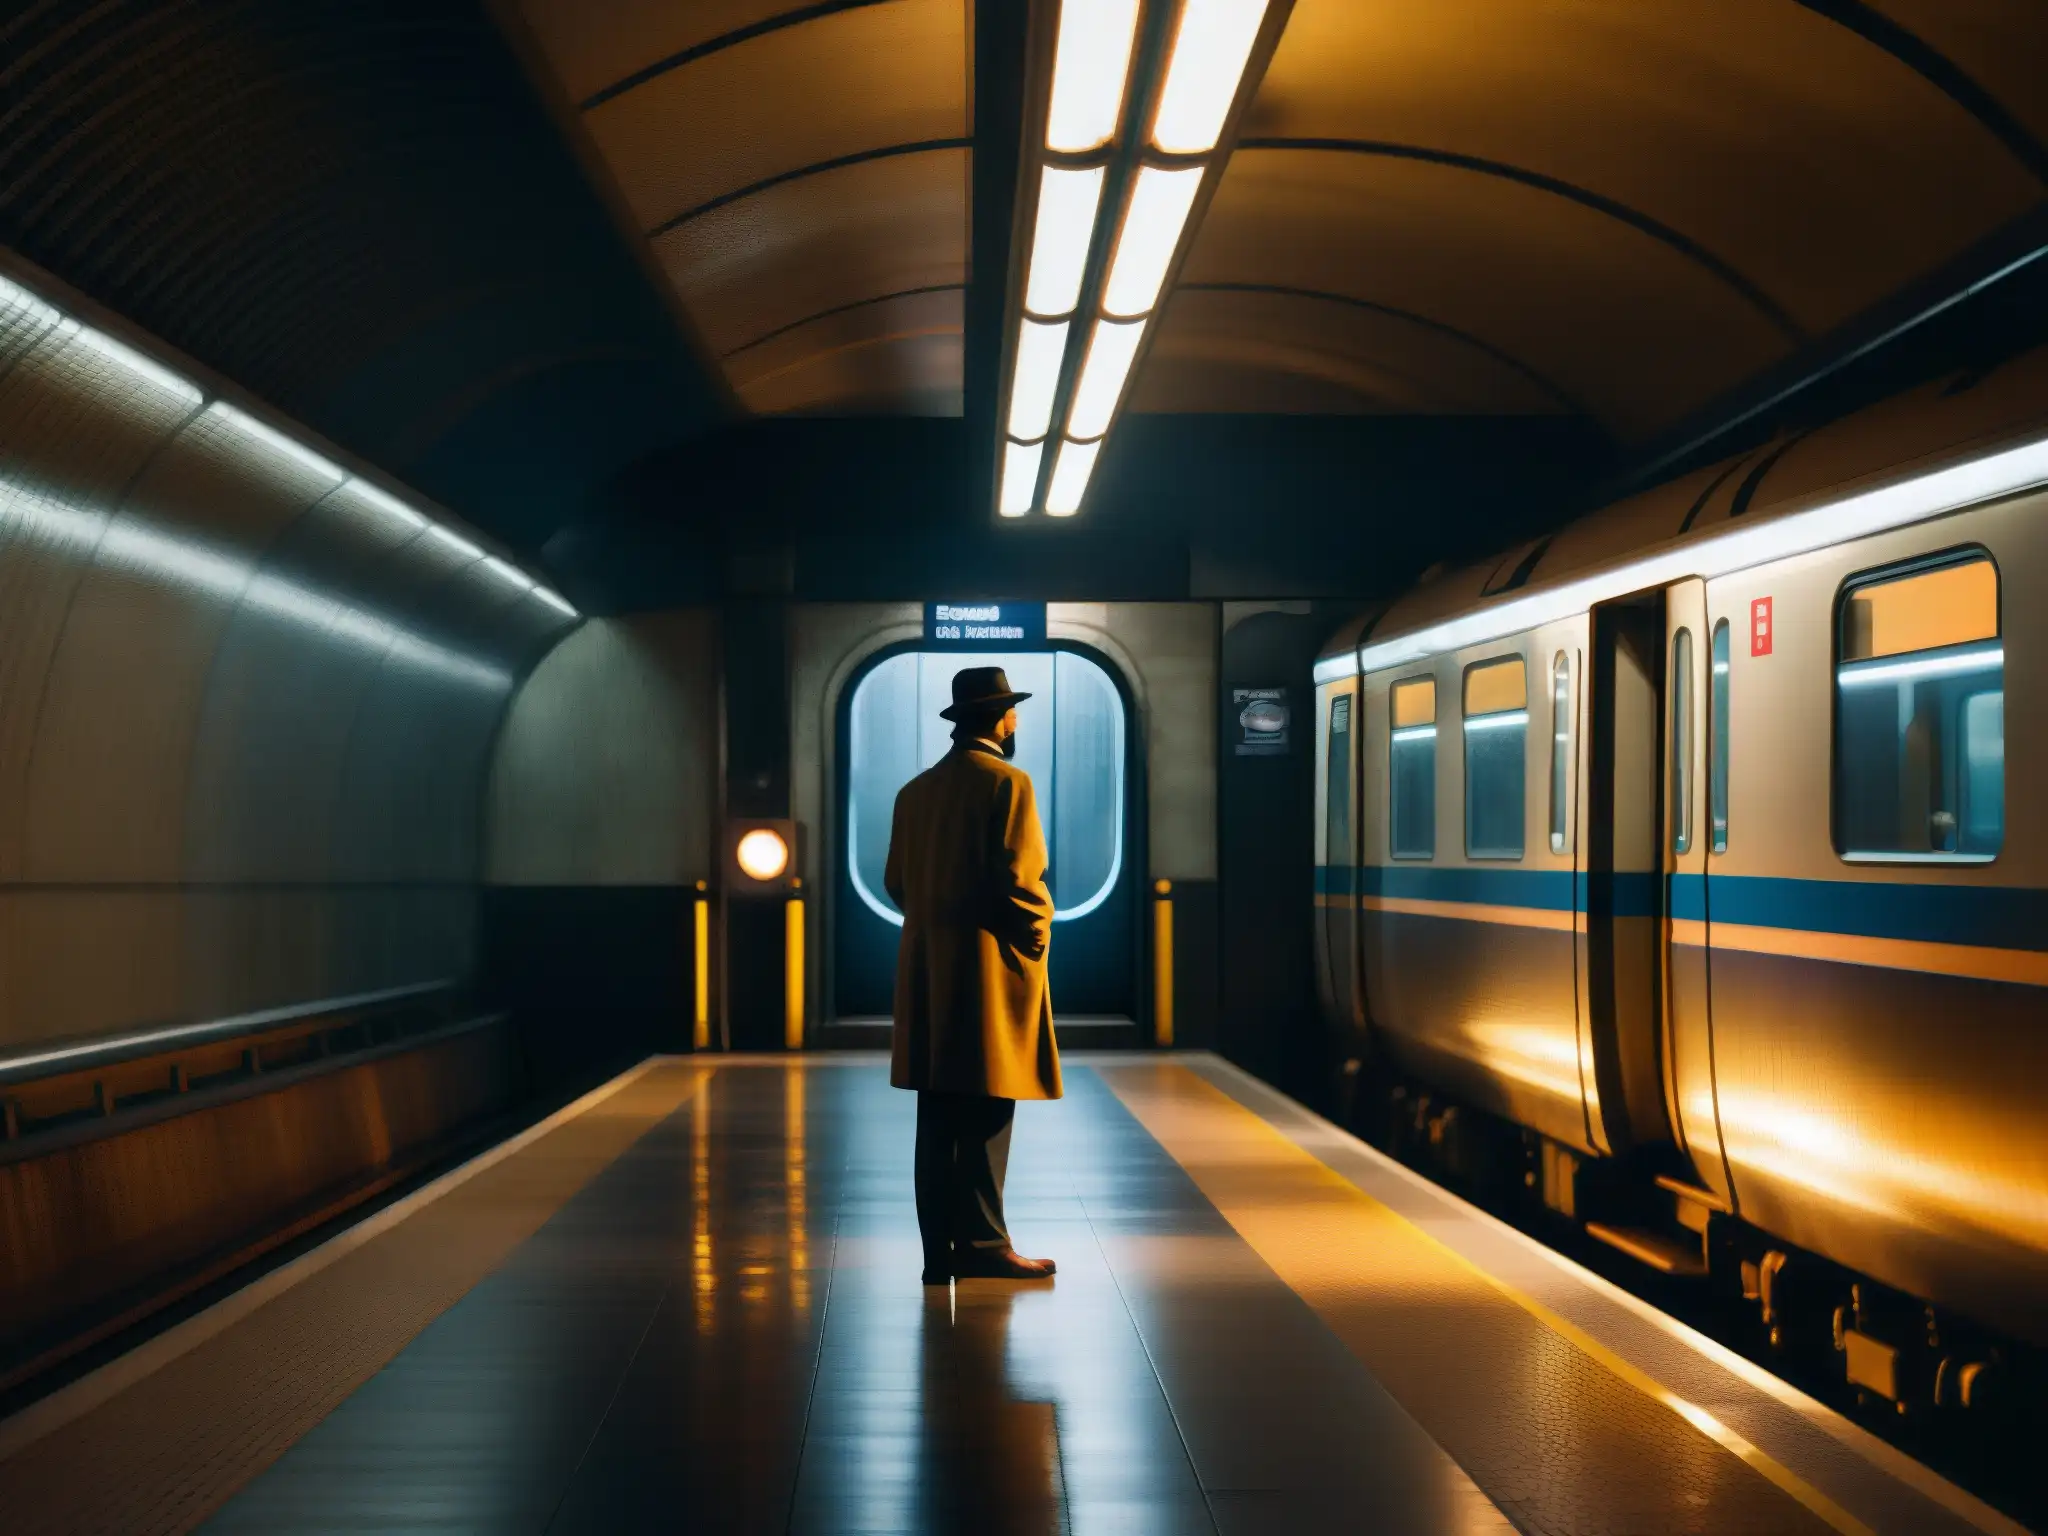 Una pasajera fantasma espera en el misterioso andén del metro de panteones, bajo una luz sobrenatural del tren vintage